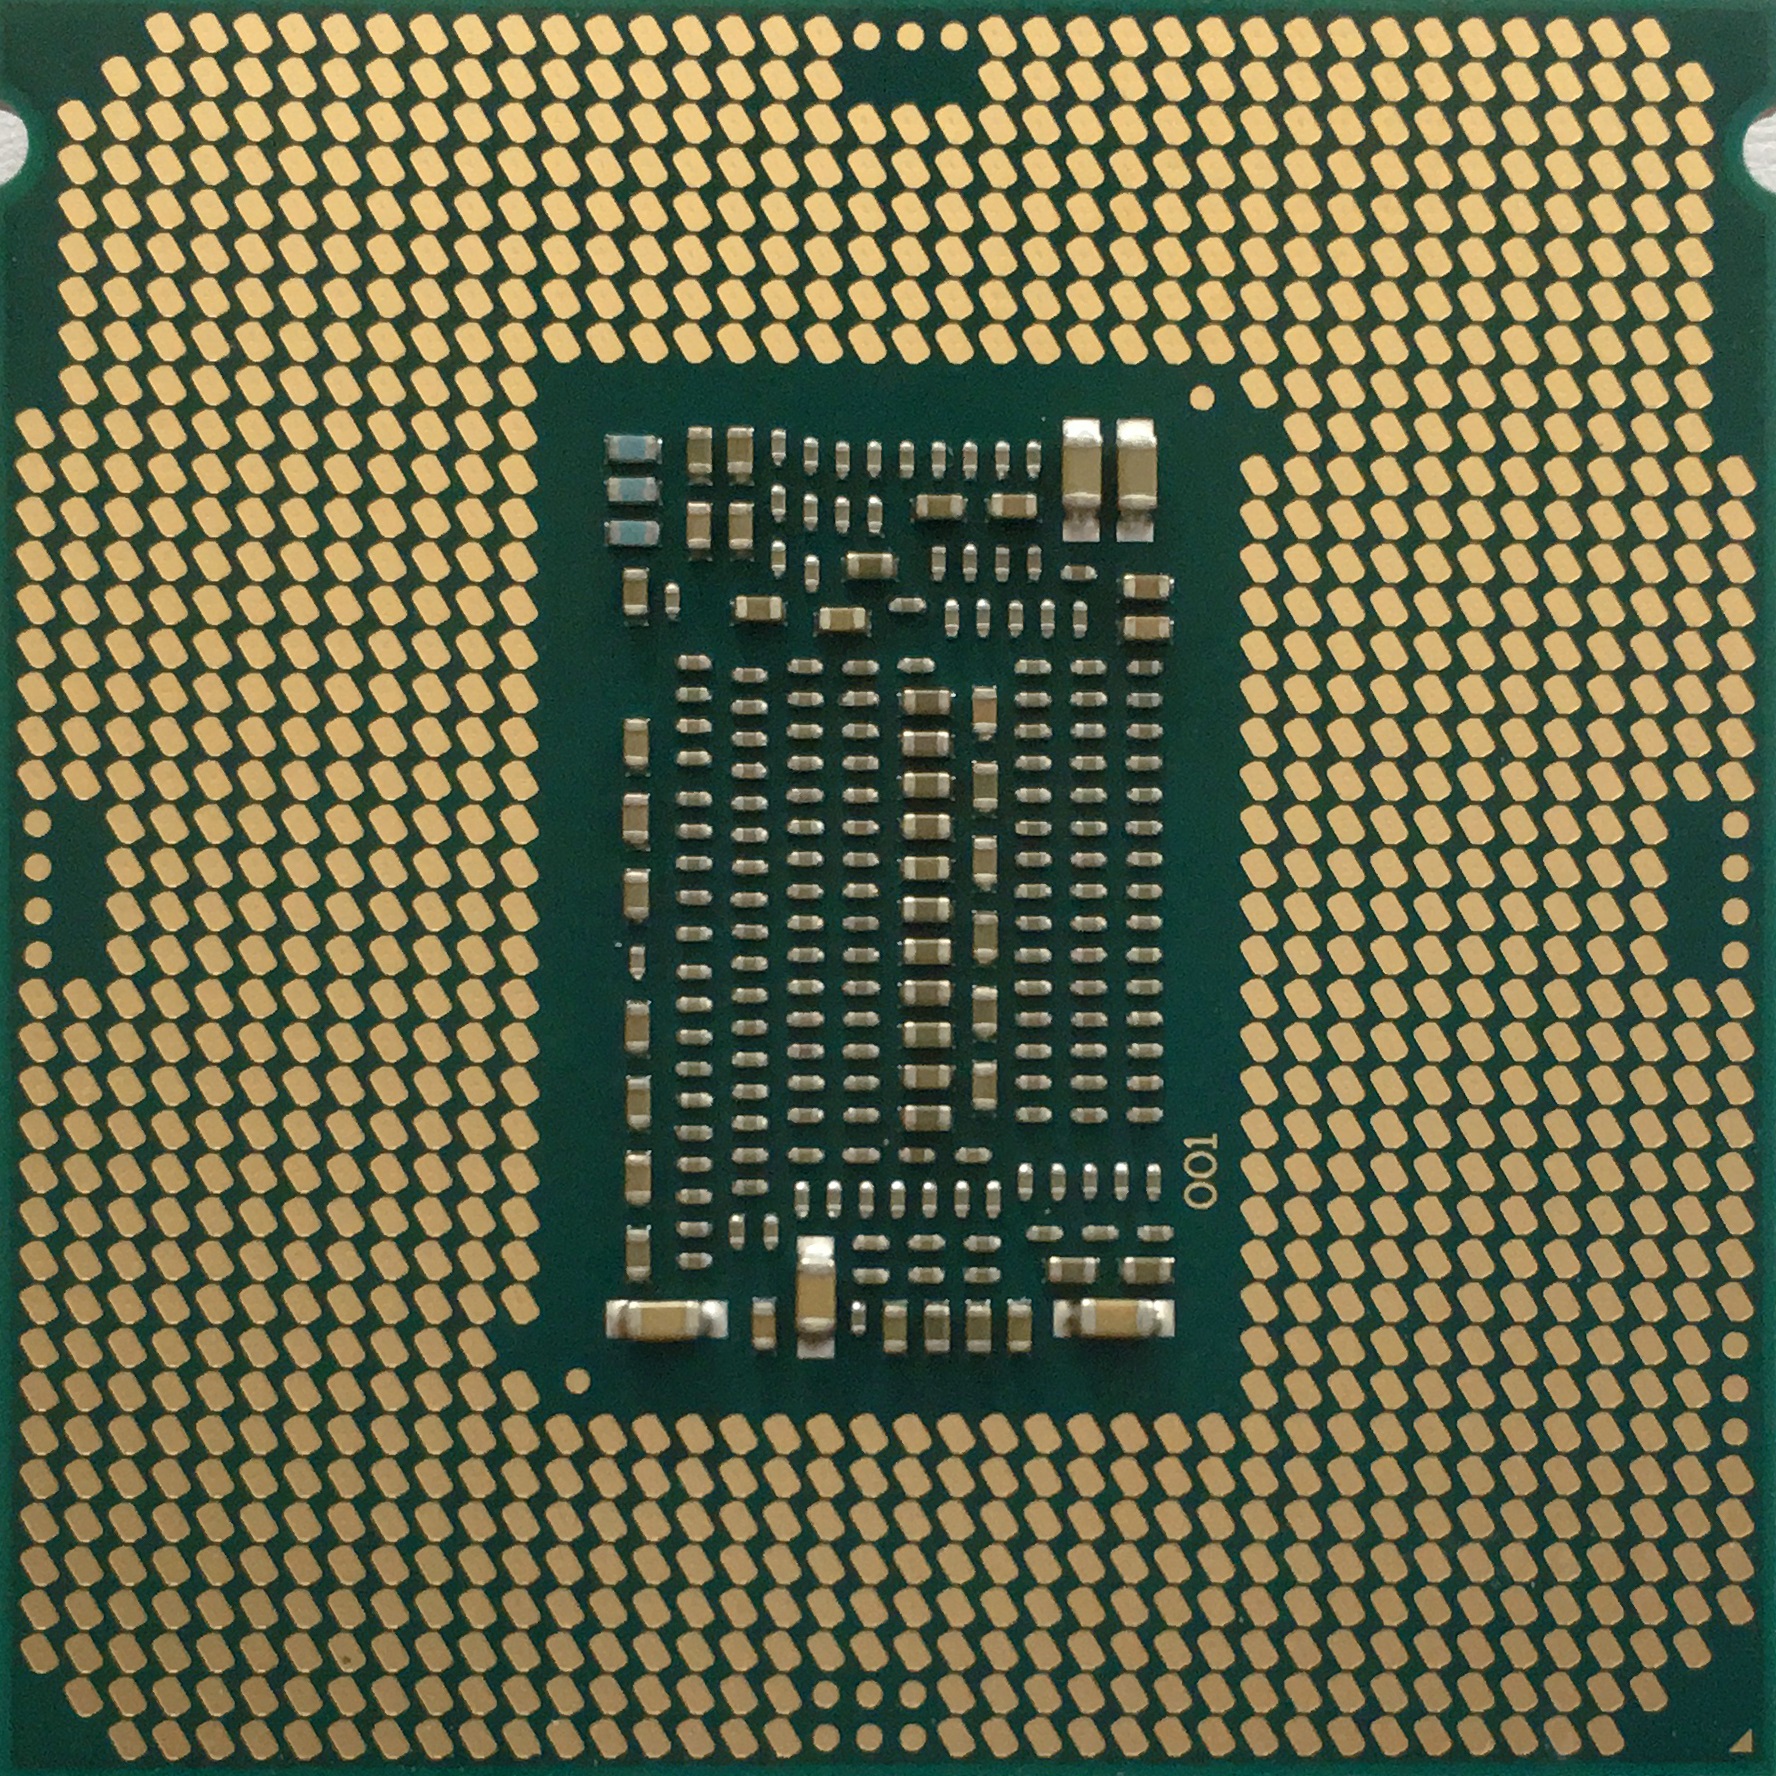 Immagine pubblicata in relazione al seguente contenuto: Intel lancia i processori Xeon E-2100 per workstation entry-level potenti | Nome immagine: news28448_Intel-Xeon-E-2100_3.jpg